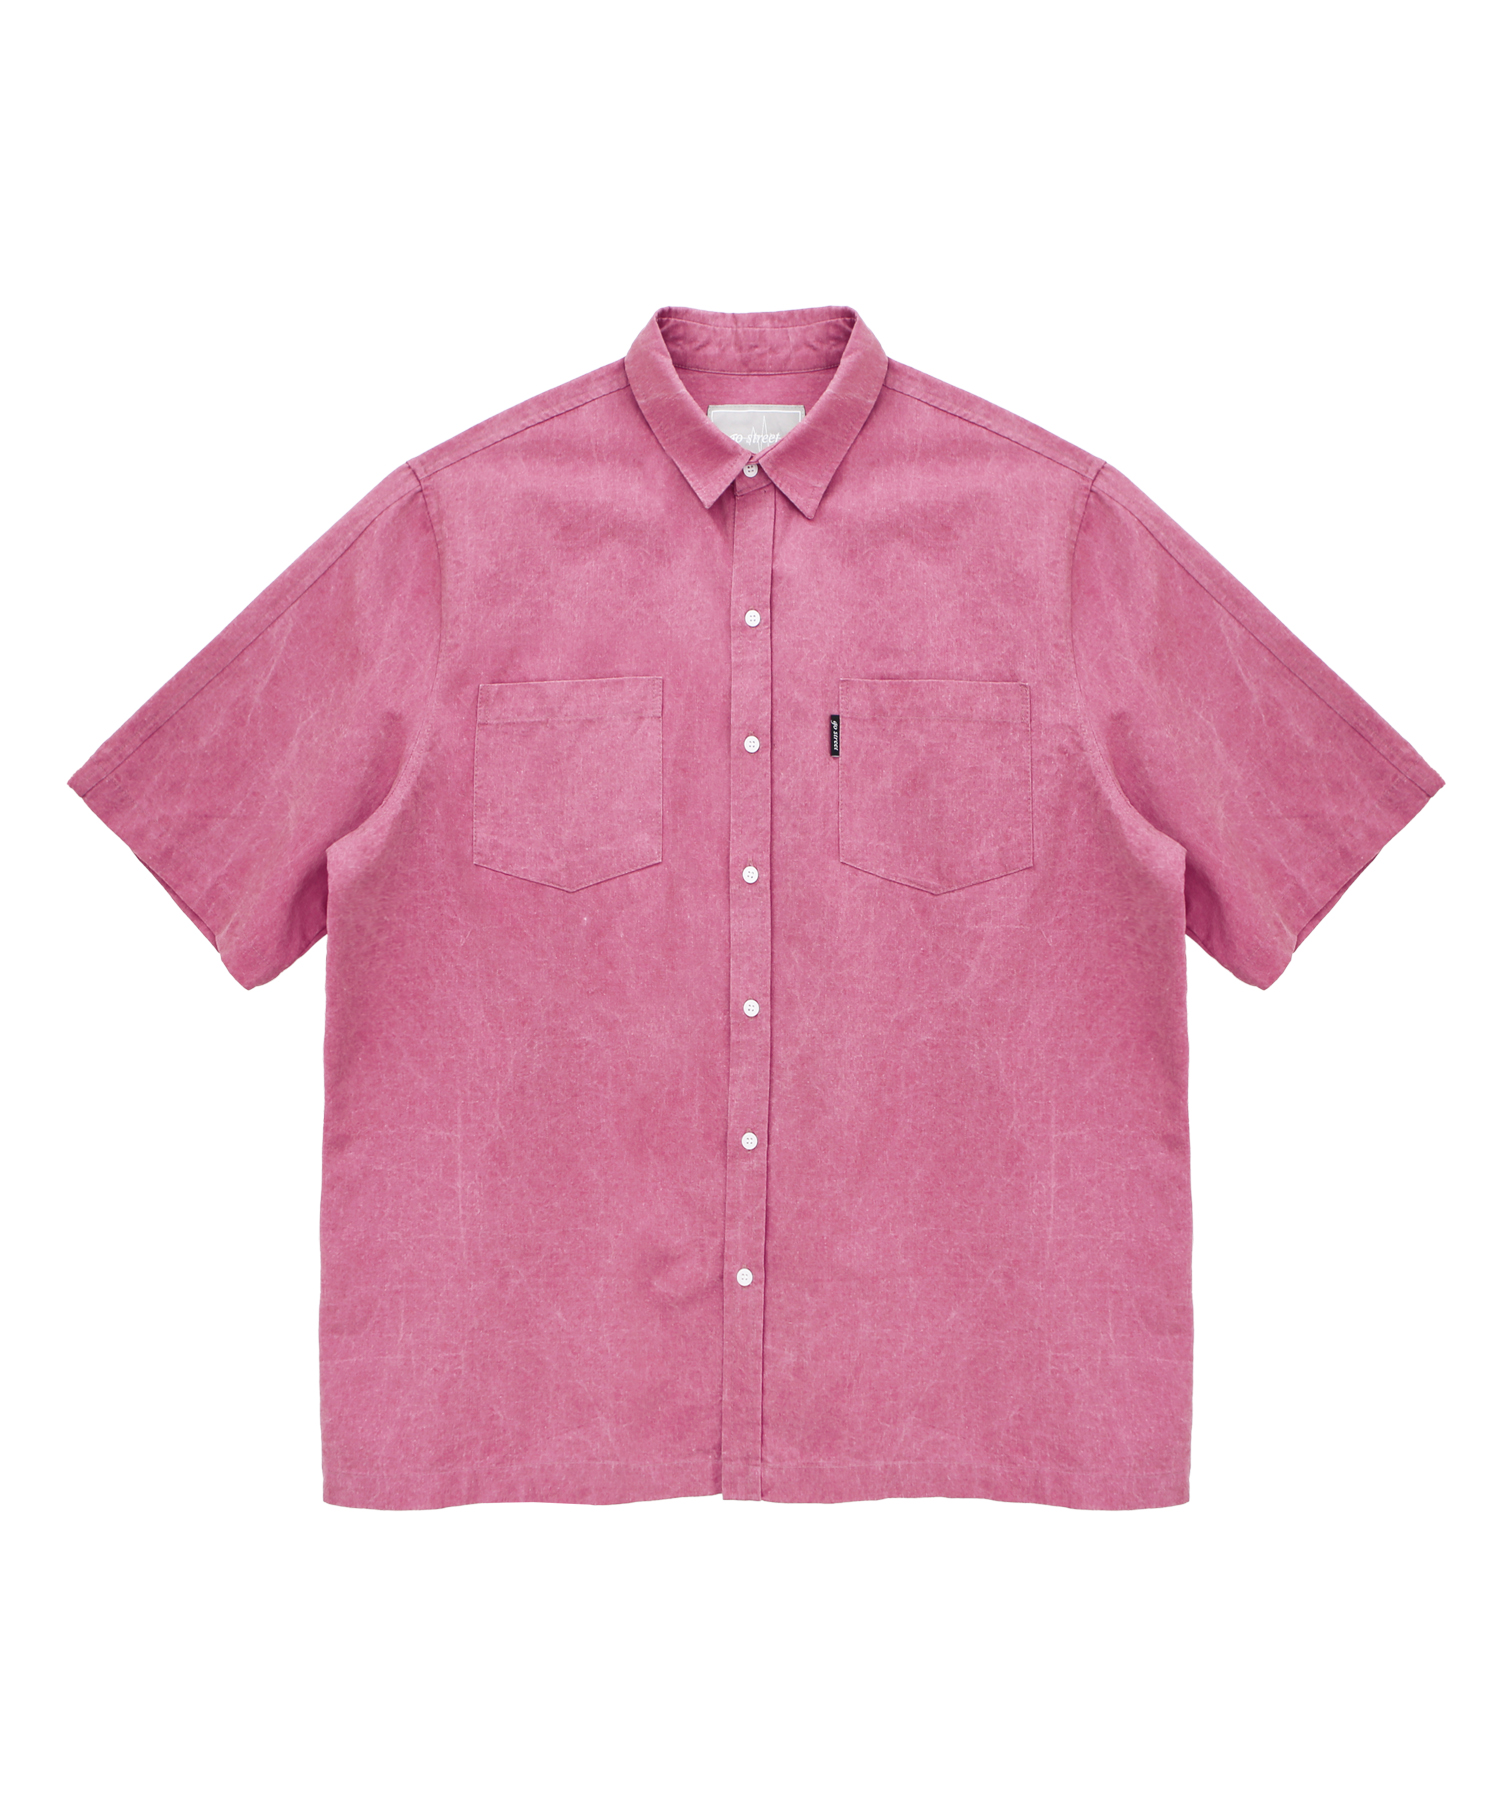 피그먼트 반팔 셔츠 핑크